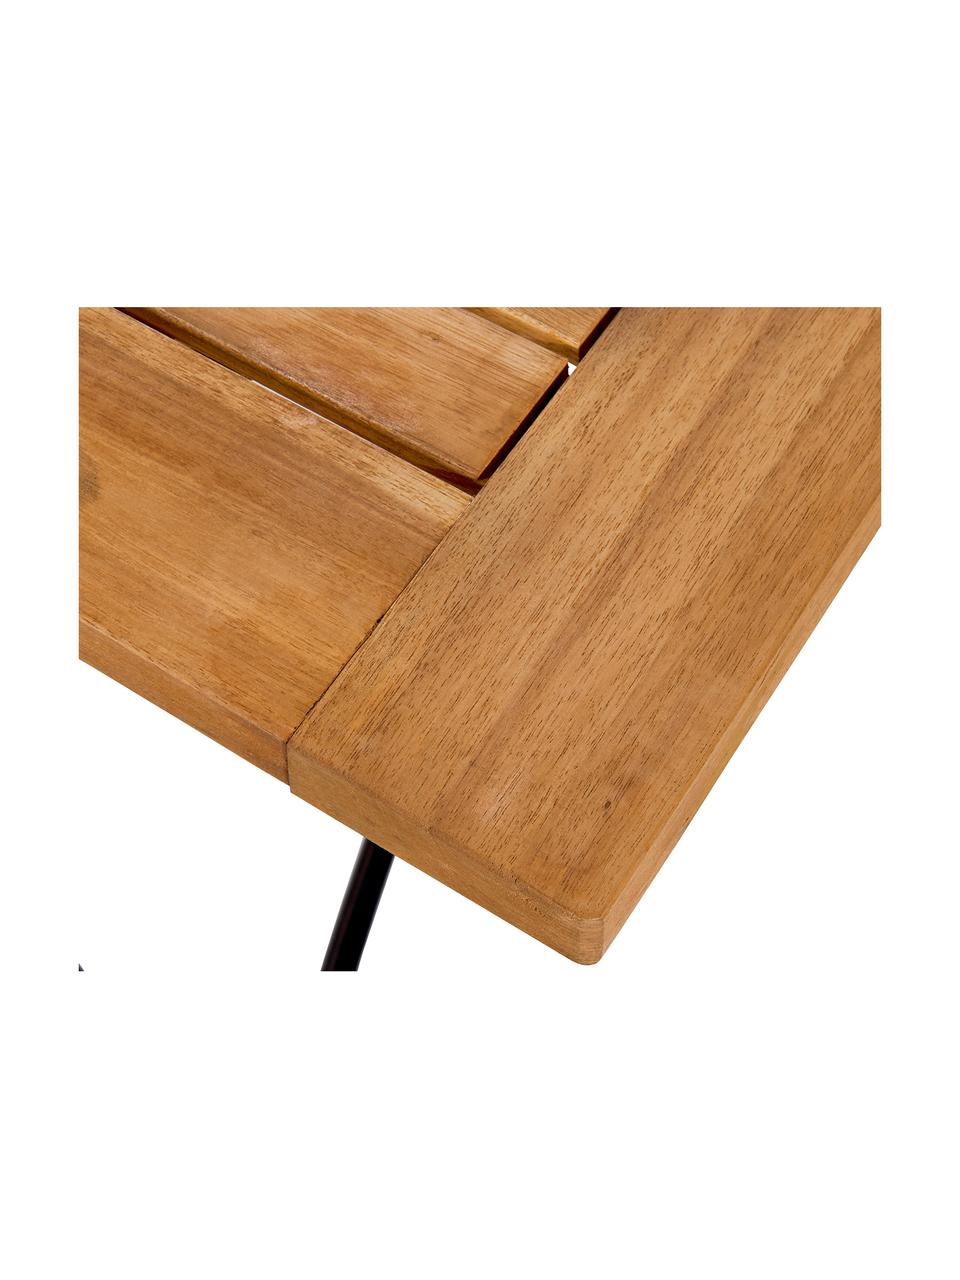 Klappbarer Gartentisch Parklife mit Holzplatte, Tischplatte: Akazienholz, geölt, Gestell: Metall, verzinkt, pulverb, Schwarz, Akazienholz, 130 x 75 cm